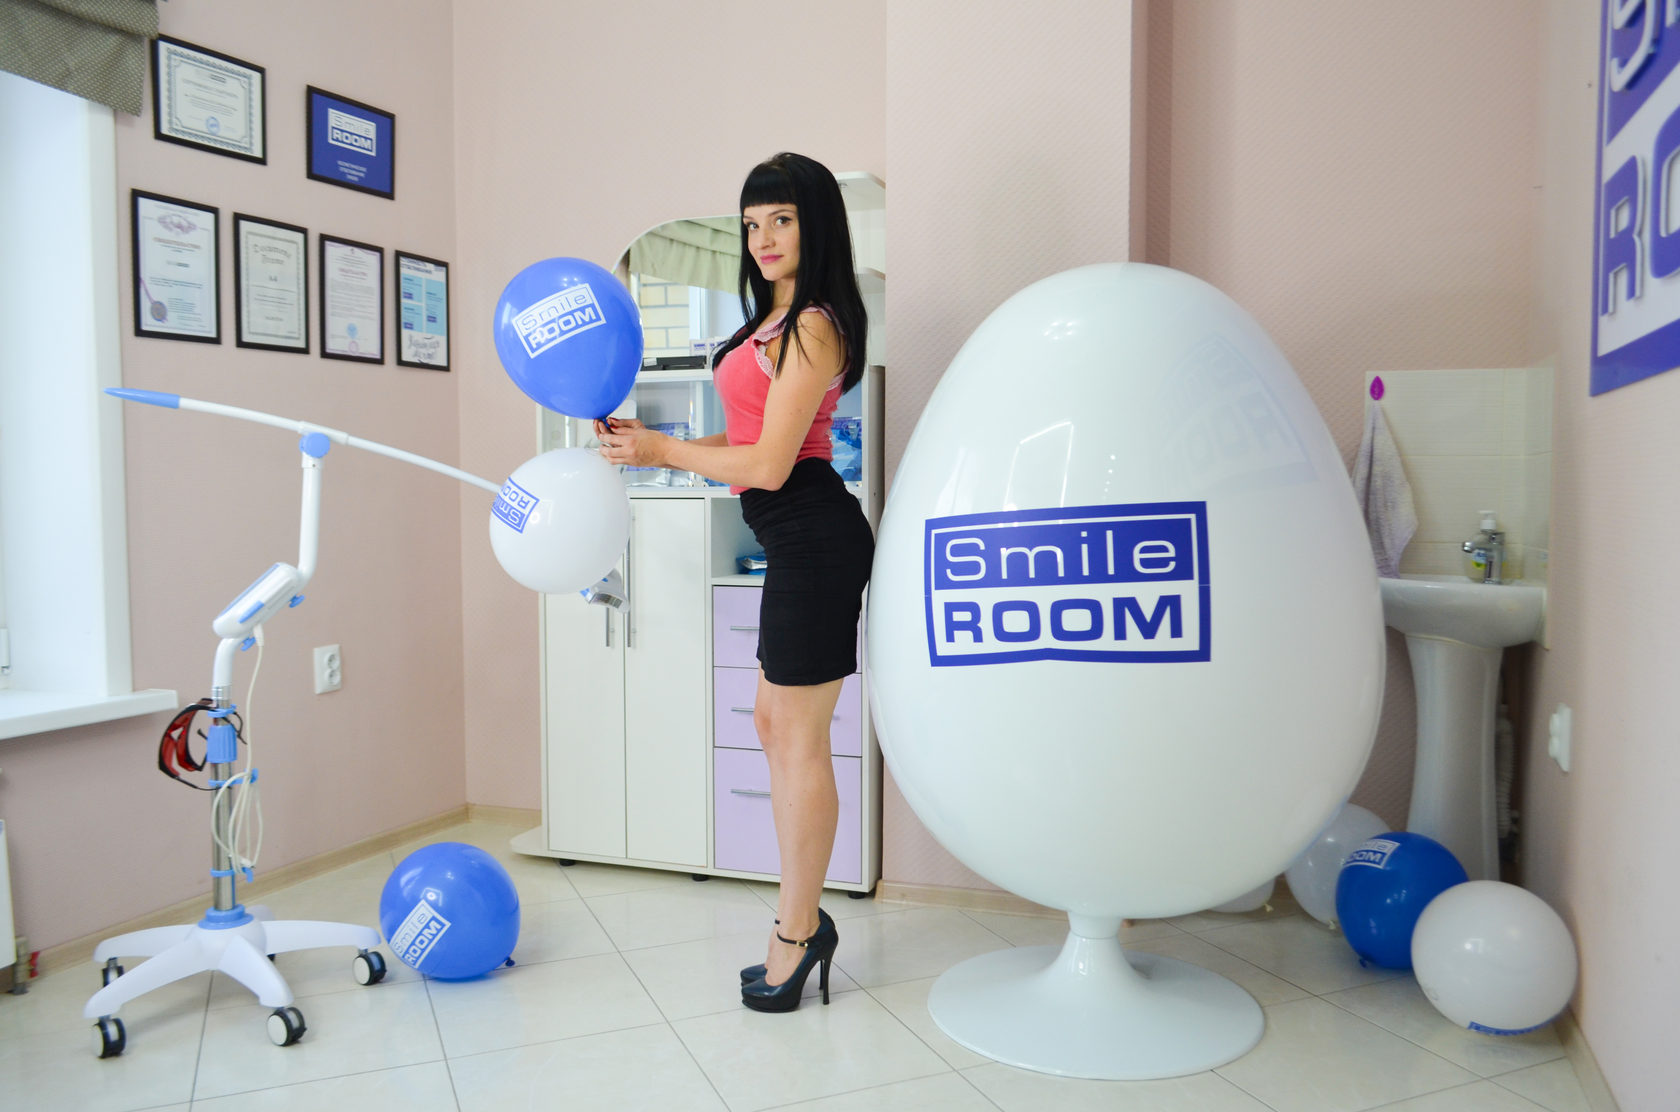 Smile room франшиза отзывы покупателей магазины валберис в витебске